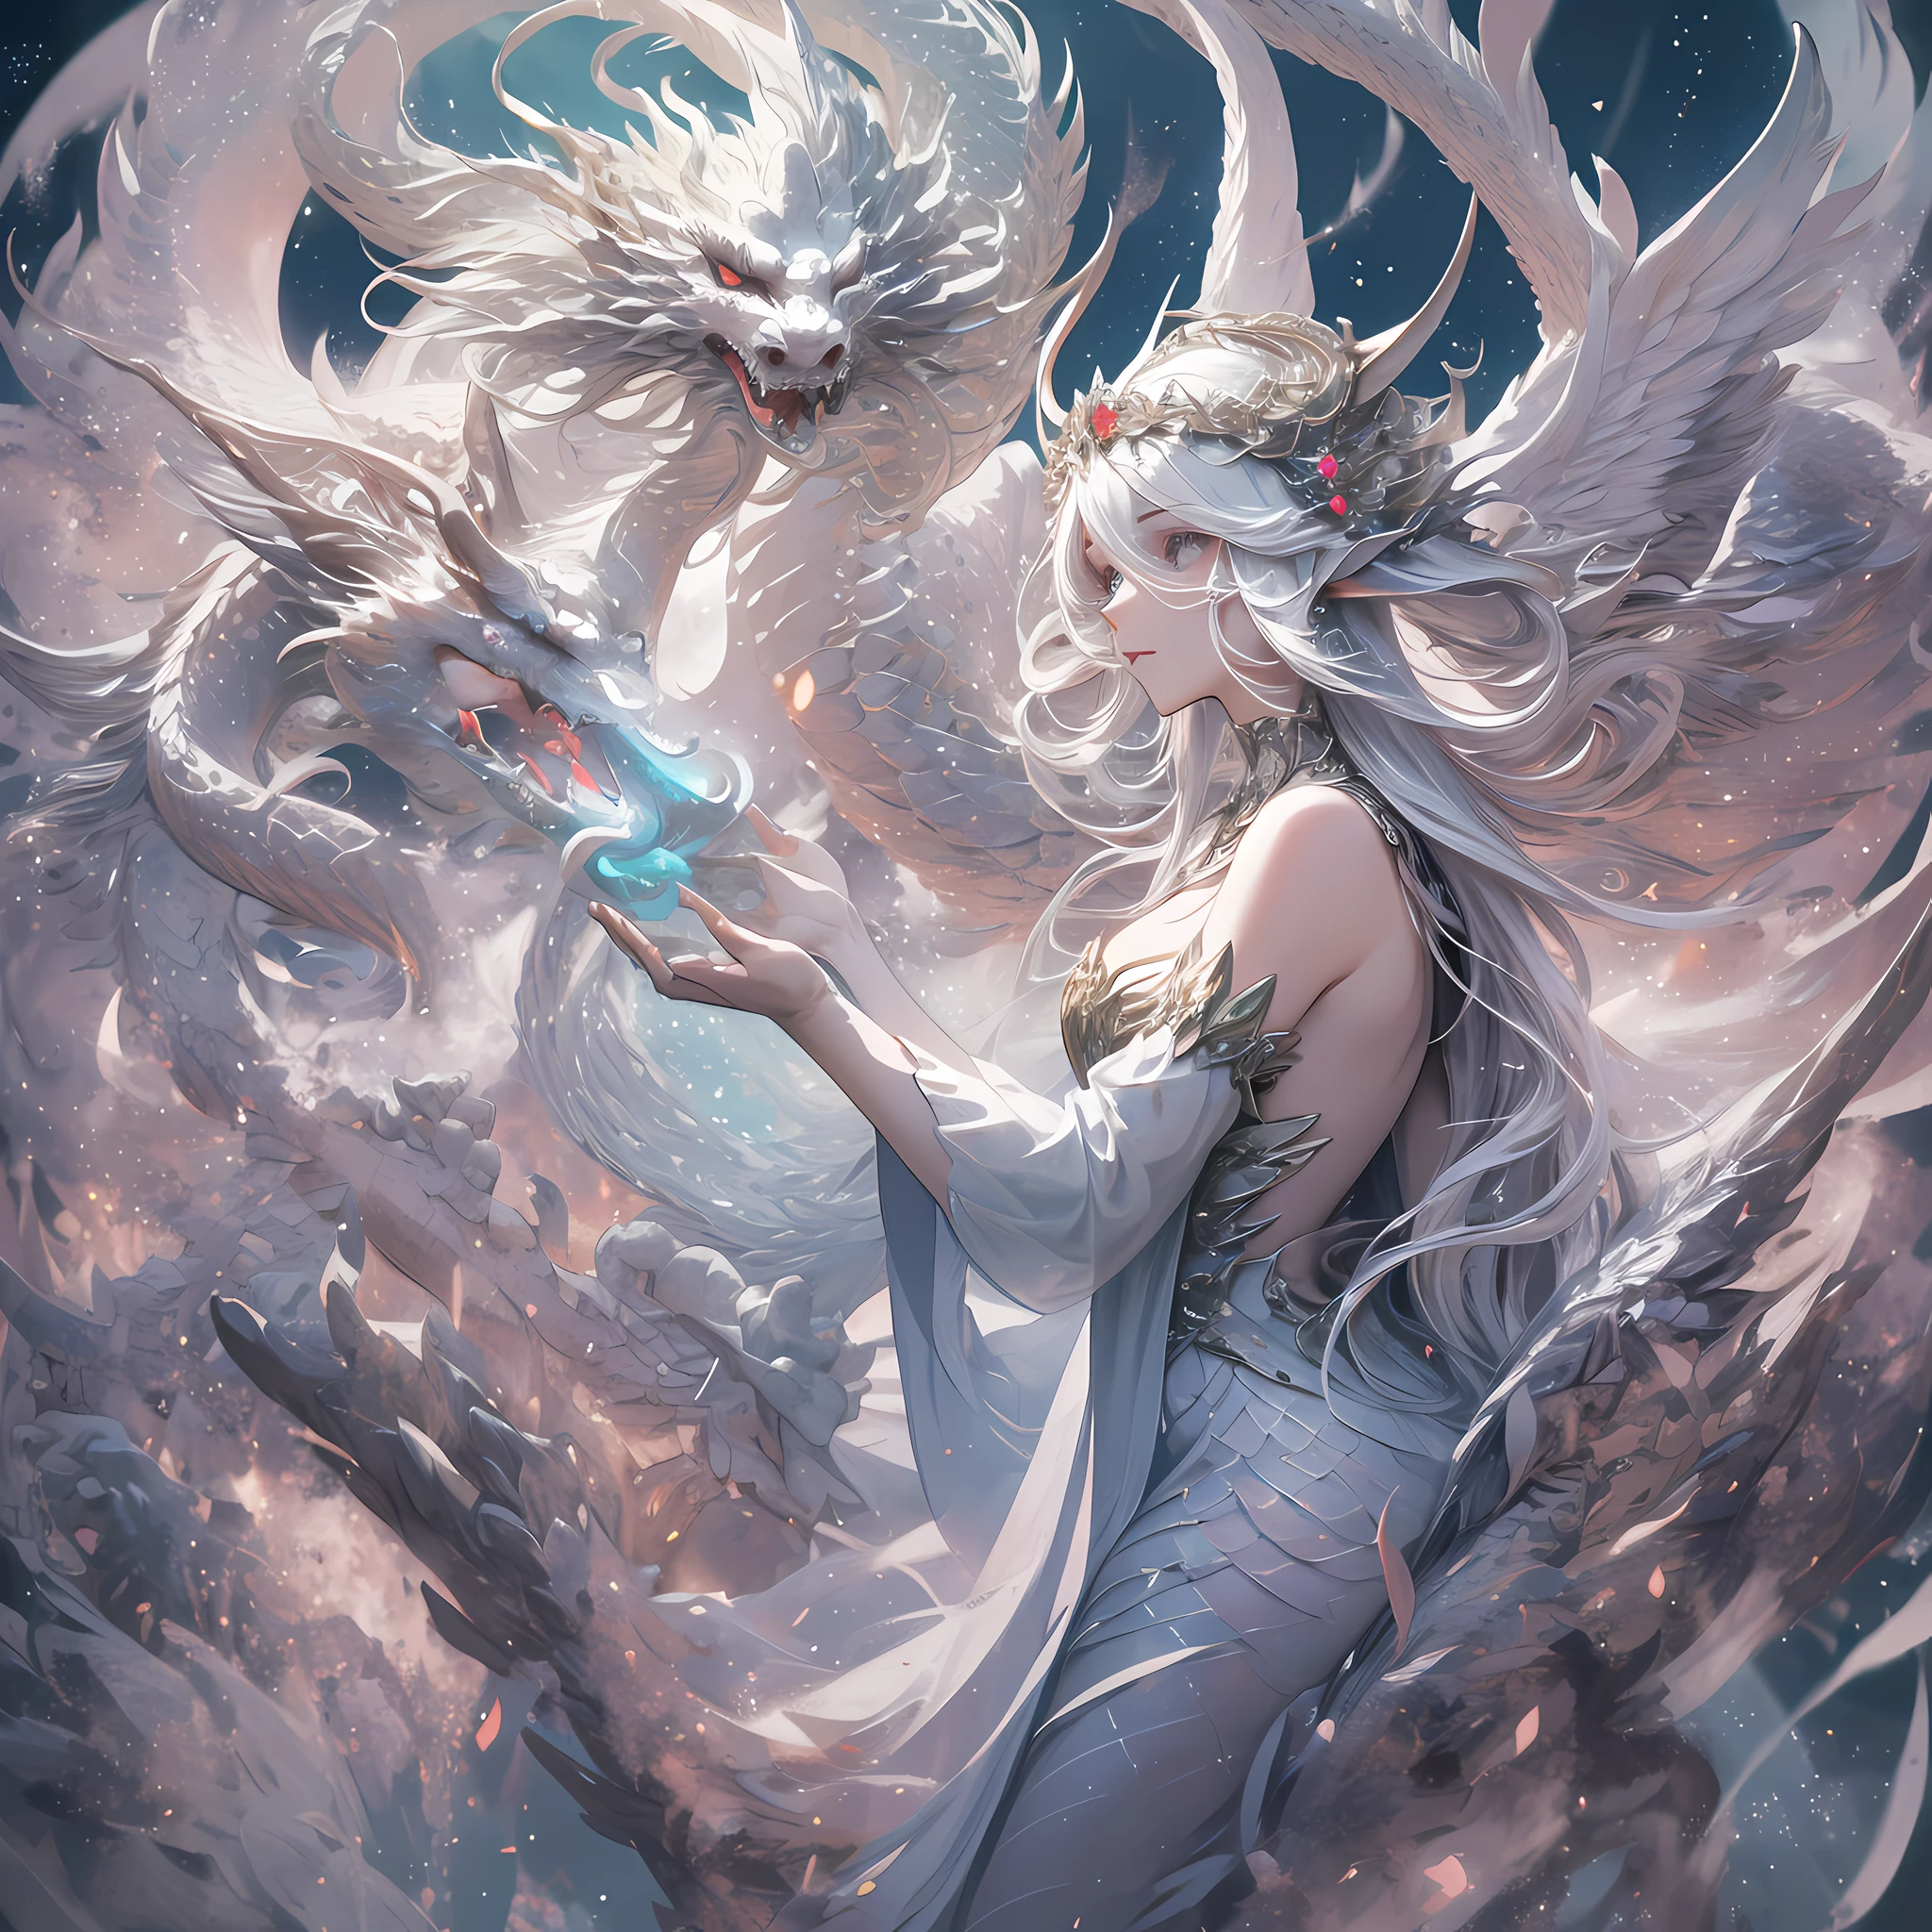 Un dragón divino blanco con escamas blancas., envuelto alrededor de un hada, un hada con cabello largo y rasgos faciales delicados, usando un vestido largo con capas claras y delicadas, y un hermoso tocado